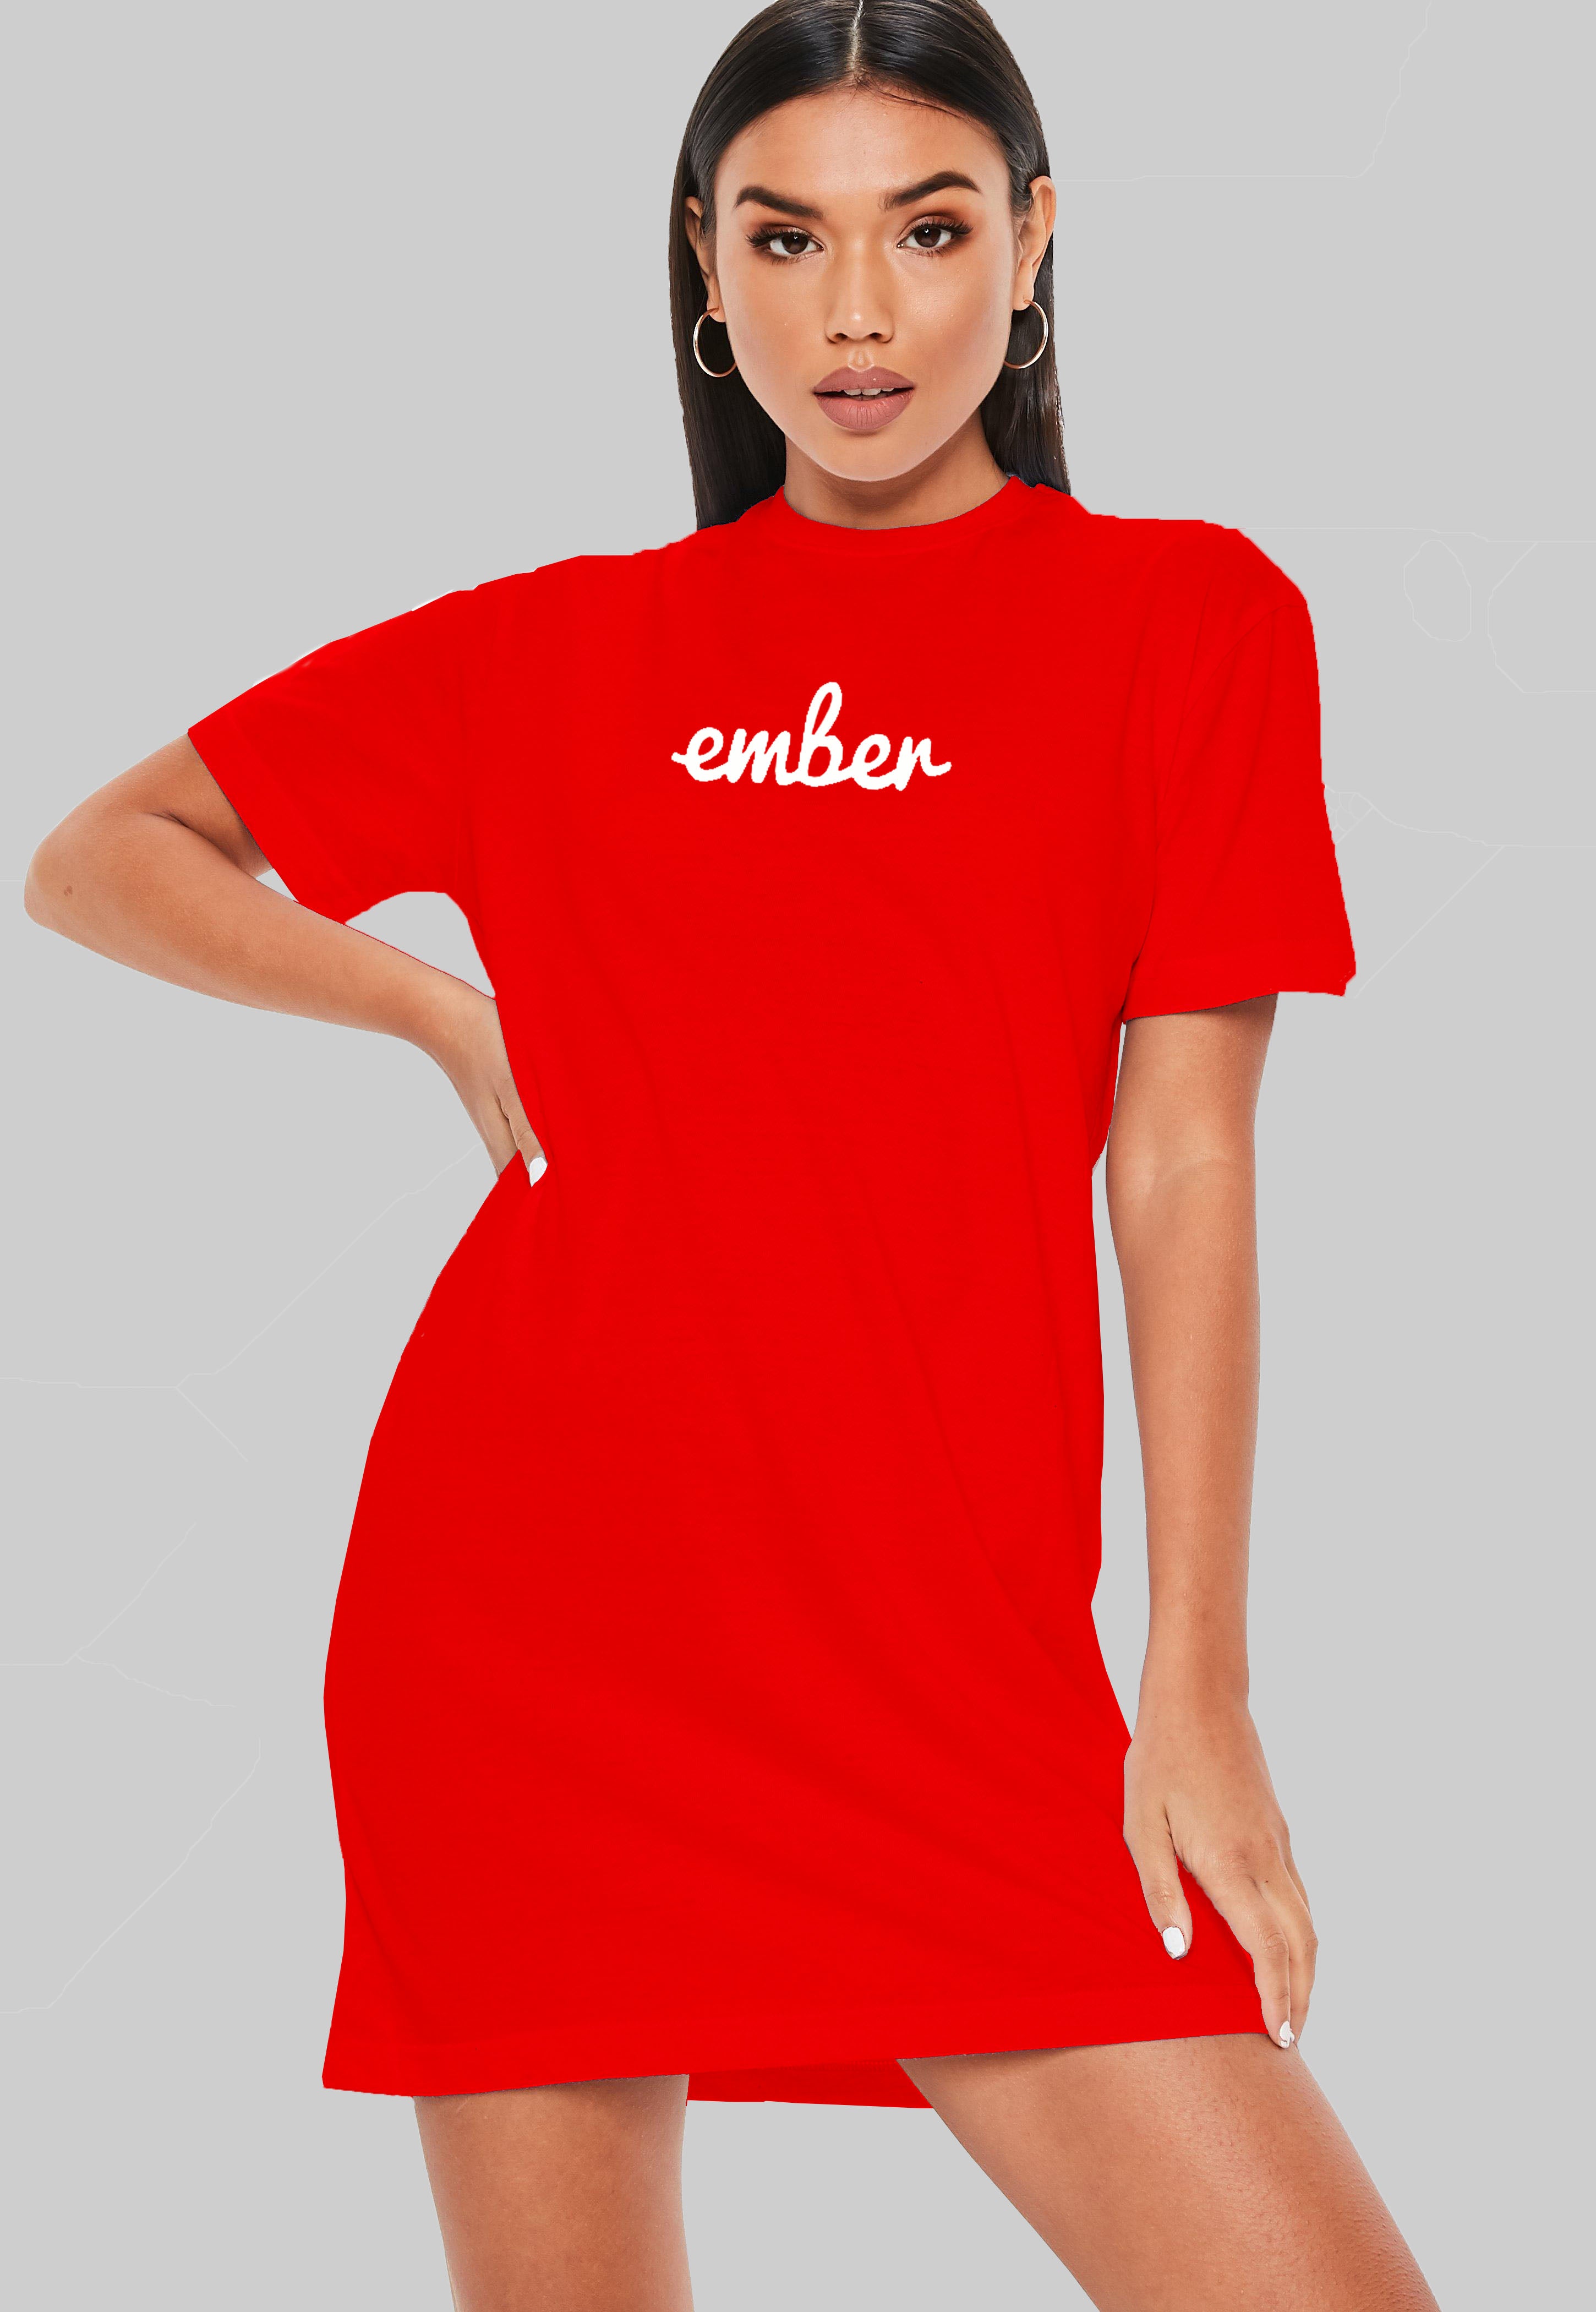 Ember T-Shirt Dress